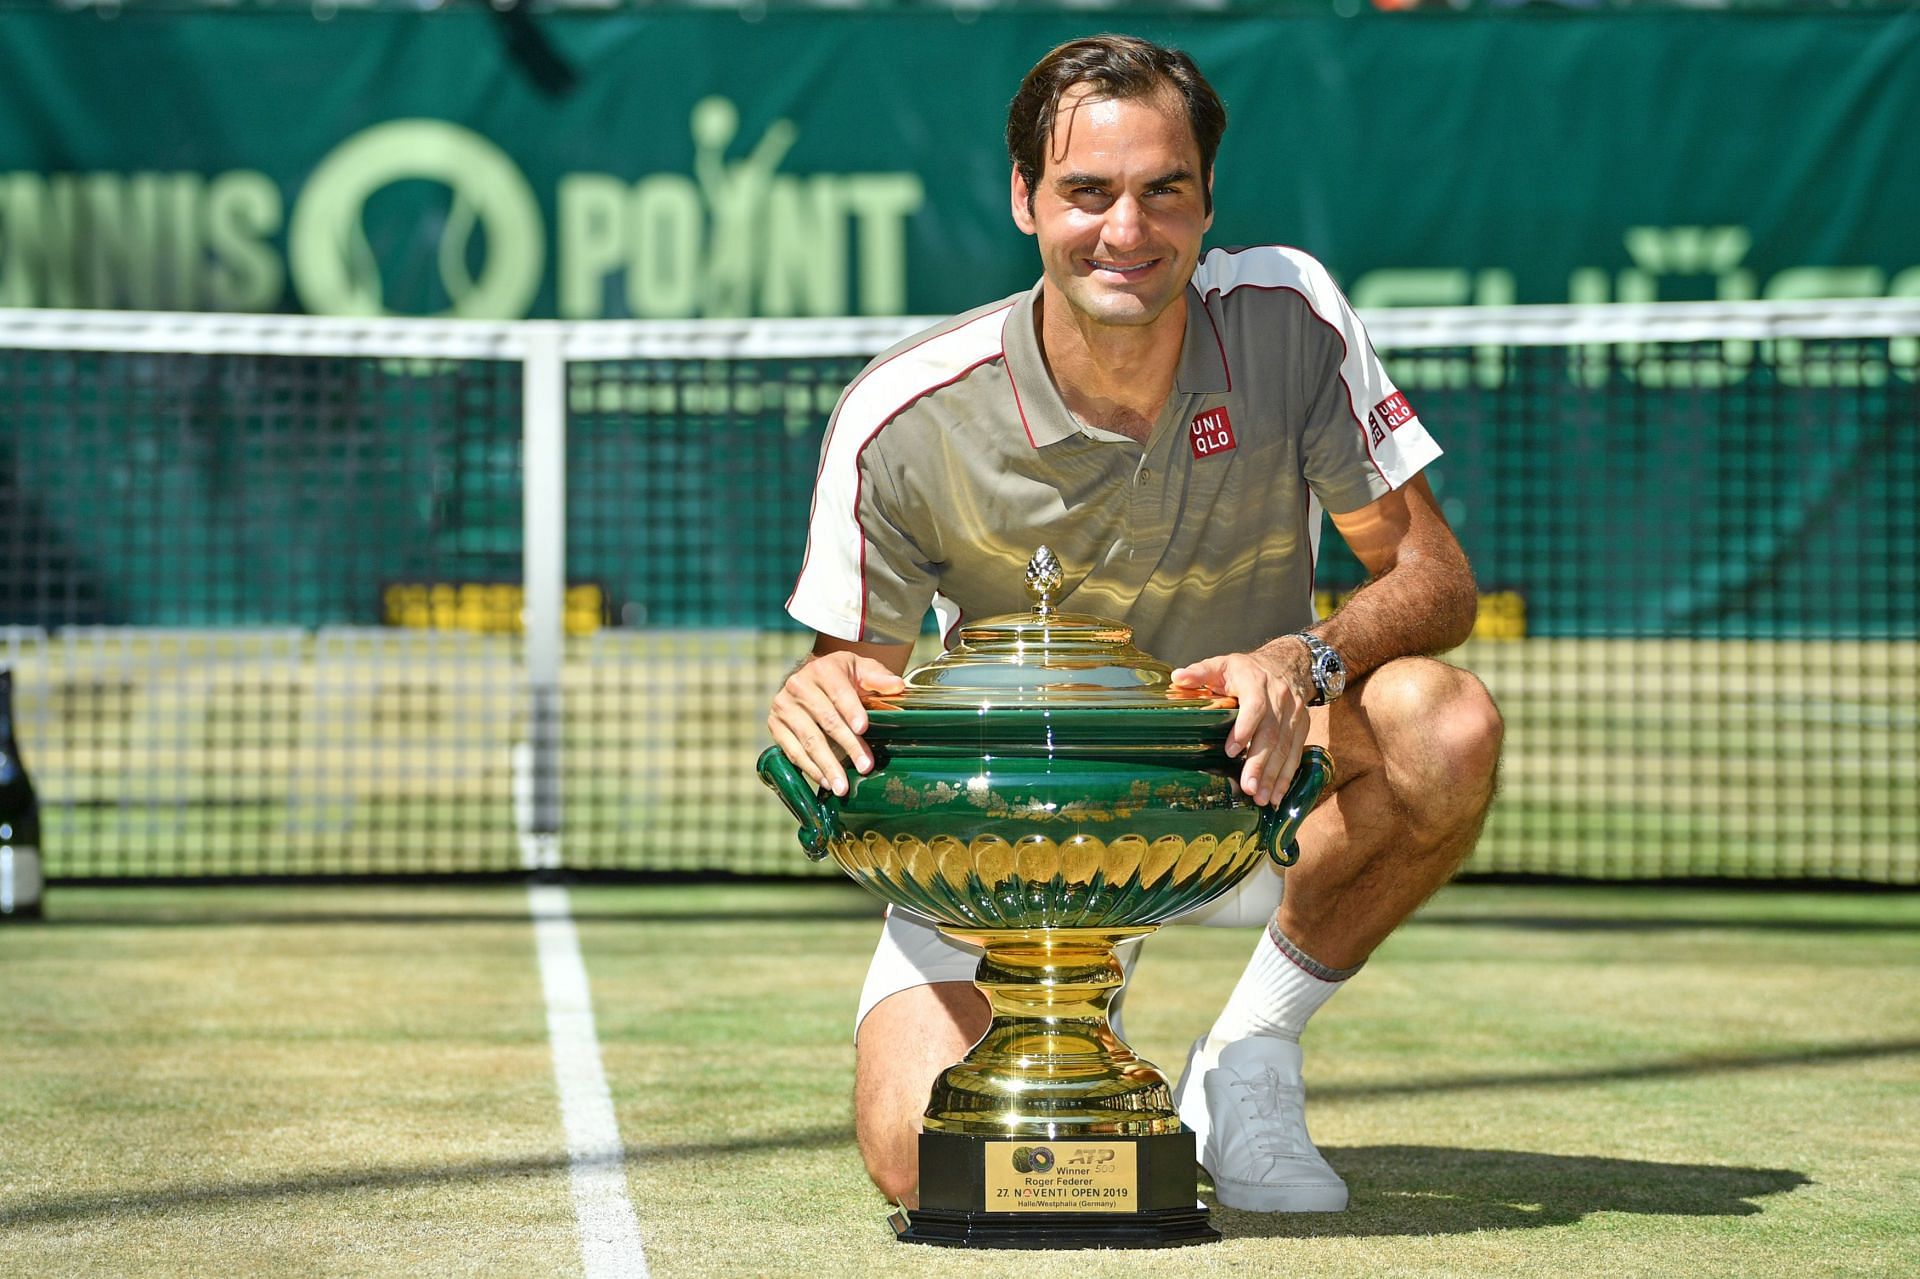 Roger Federer at the 2019 Halle Open.